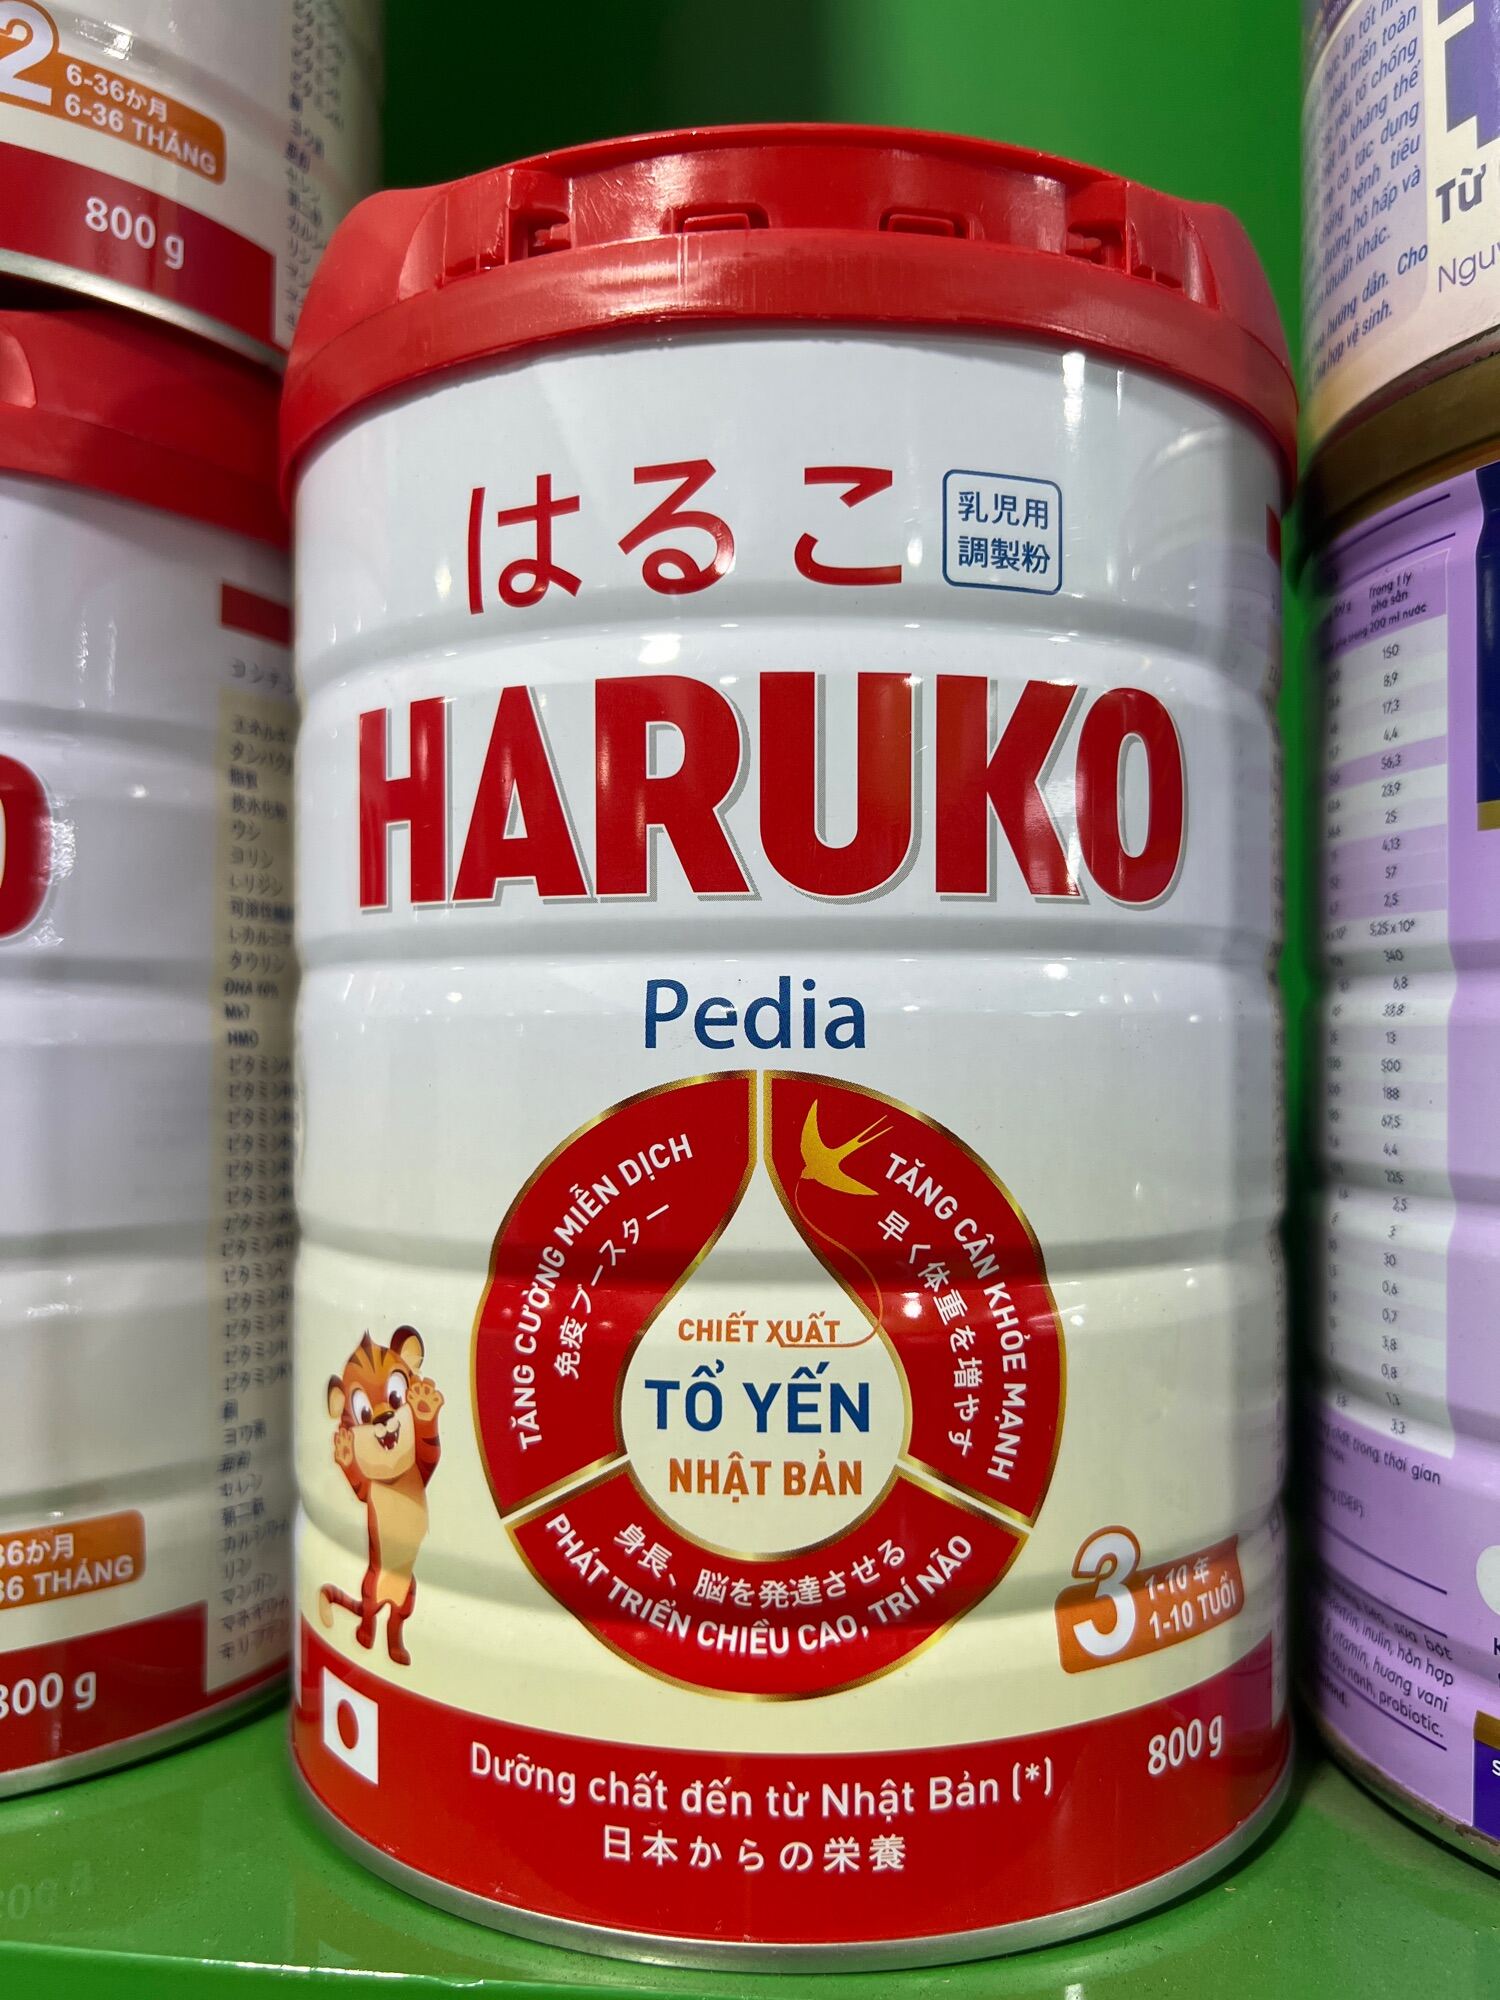 Sữa Haruko pedia dành cho bé từ 1-10 tuổi 800g